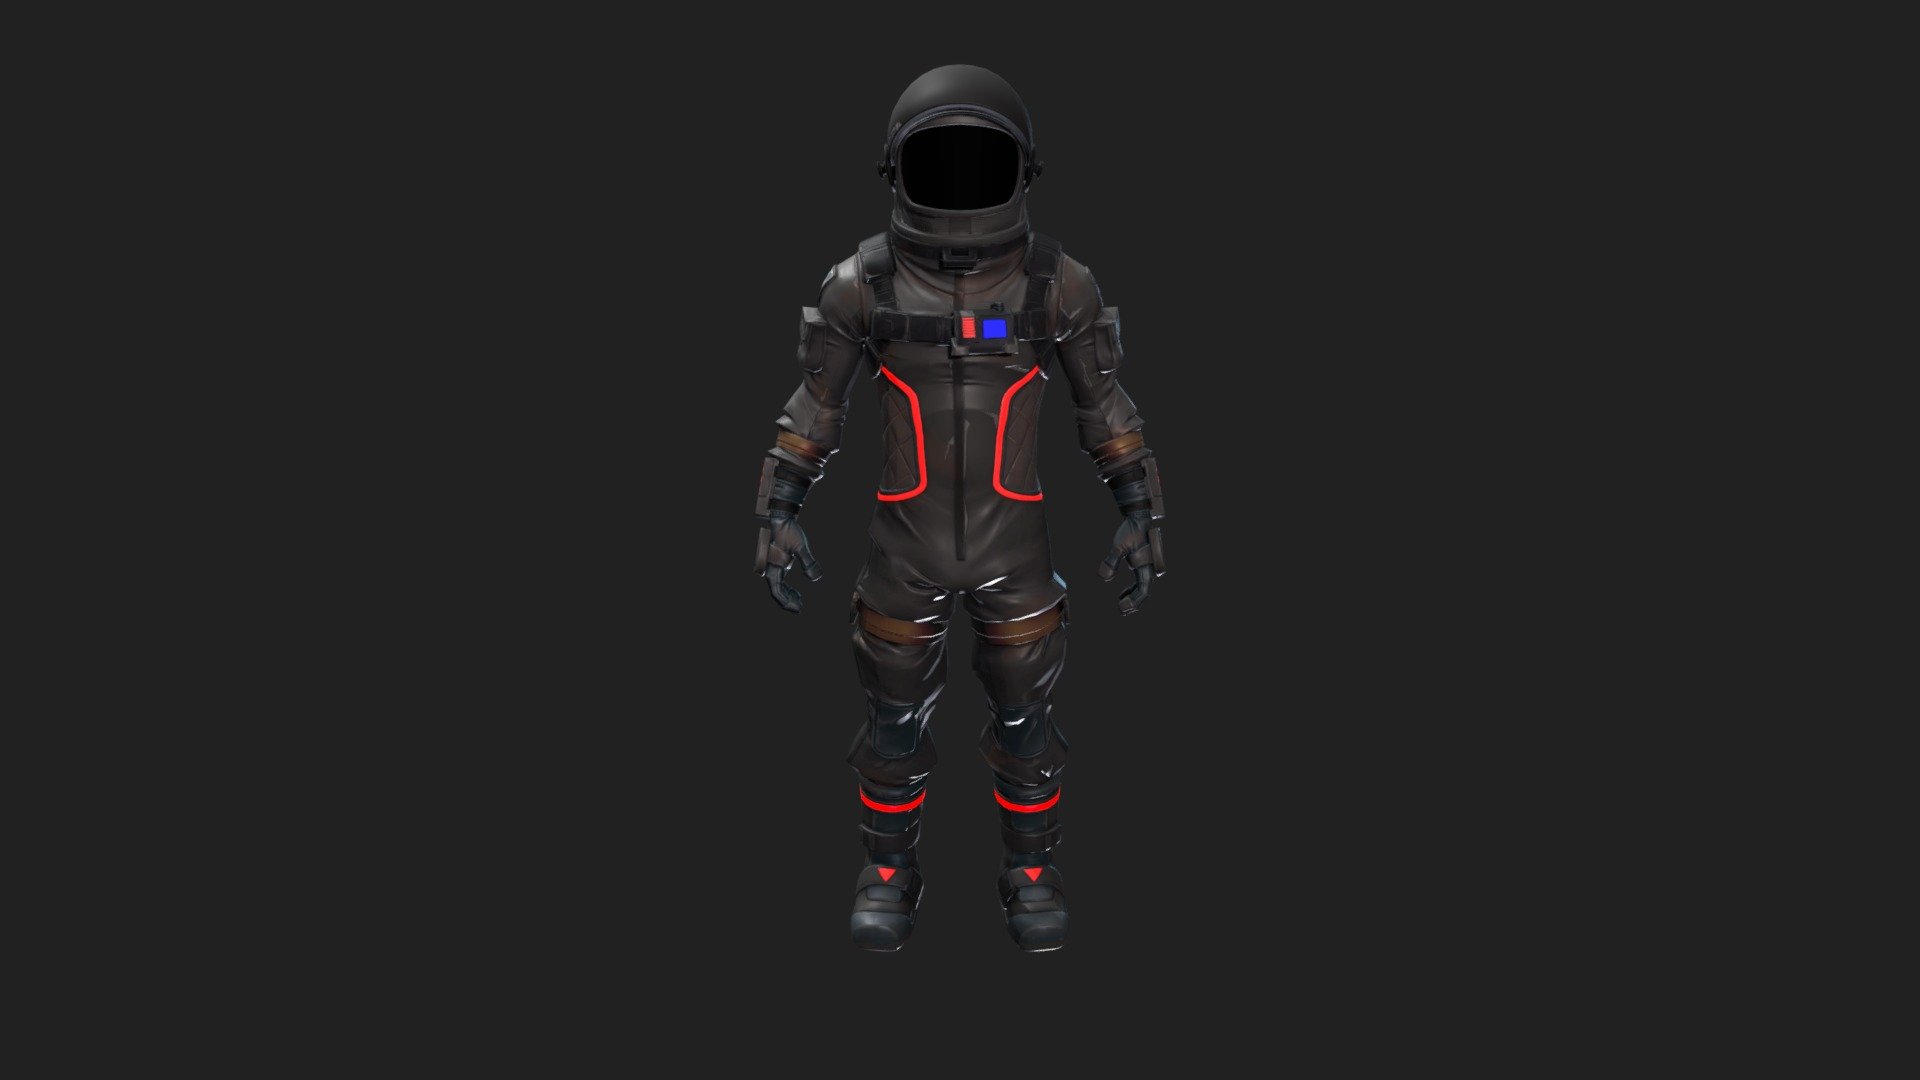 Astronaut Blender Model Free